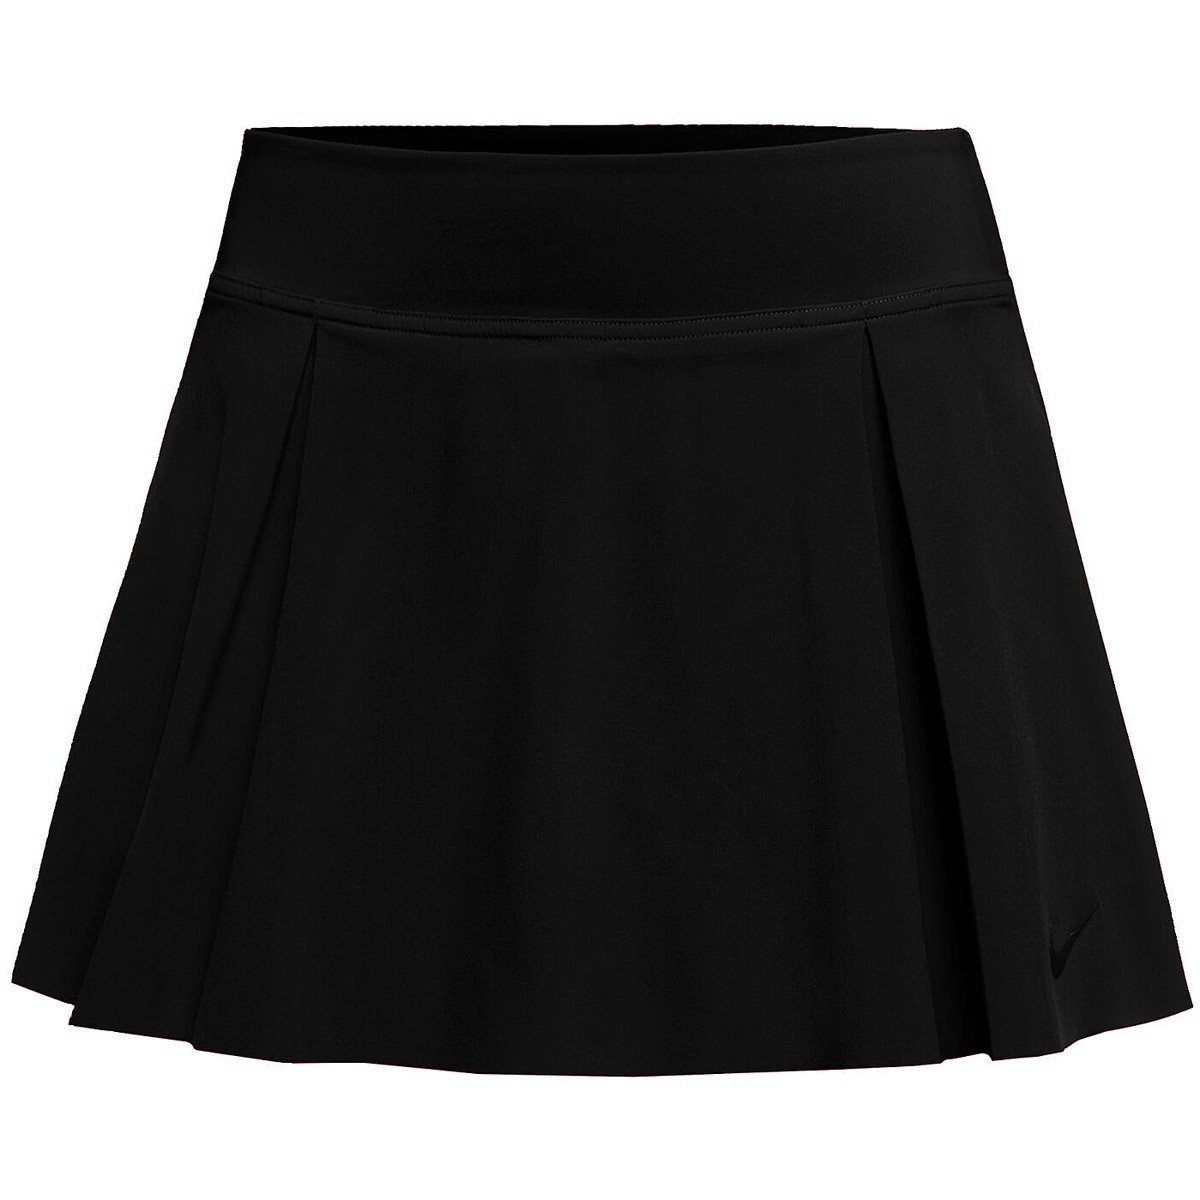 Теннисная юбка женская Nike Club Tennis Skirt black/black